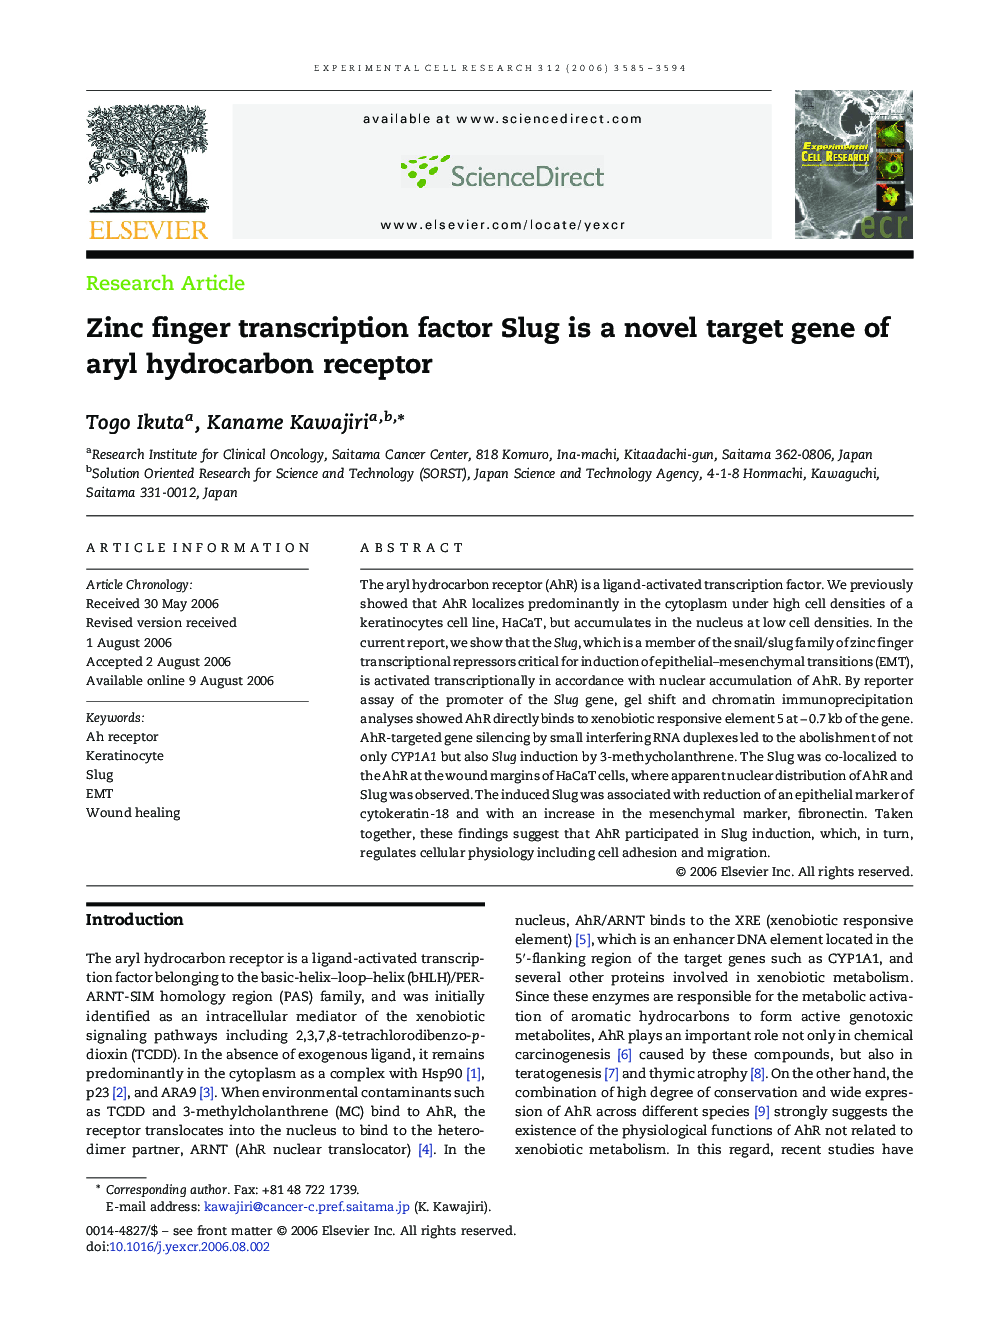 Zinc finger transcription factor Slug is a novel target gene of aryl hydrocarbon receptor